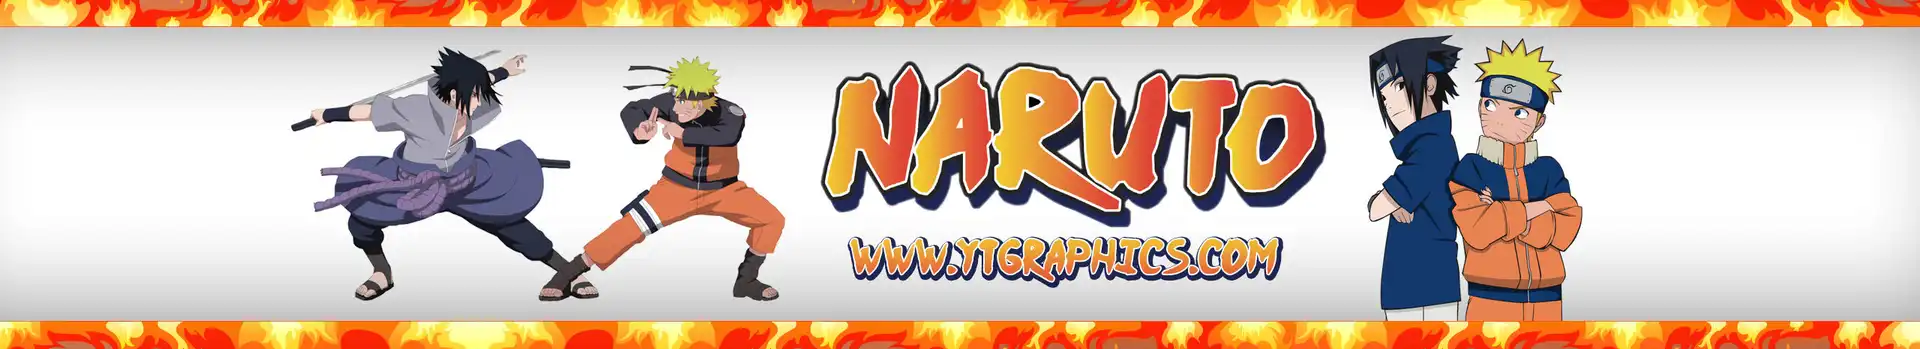 Naruto & Sasuke preview